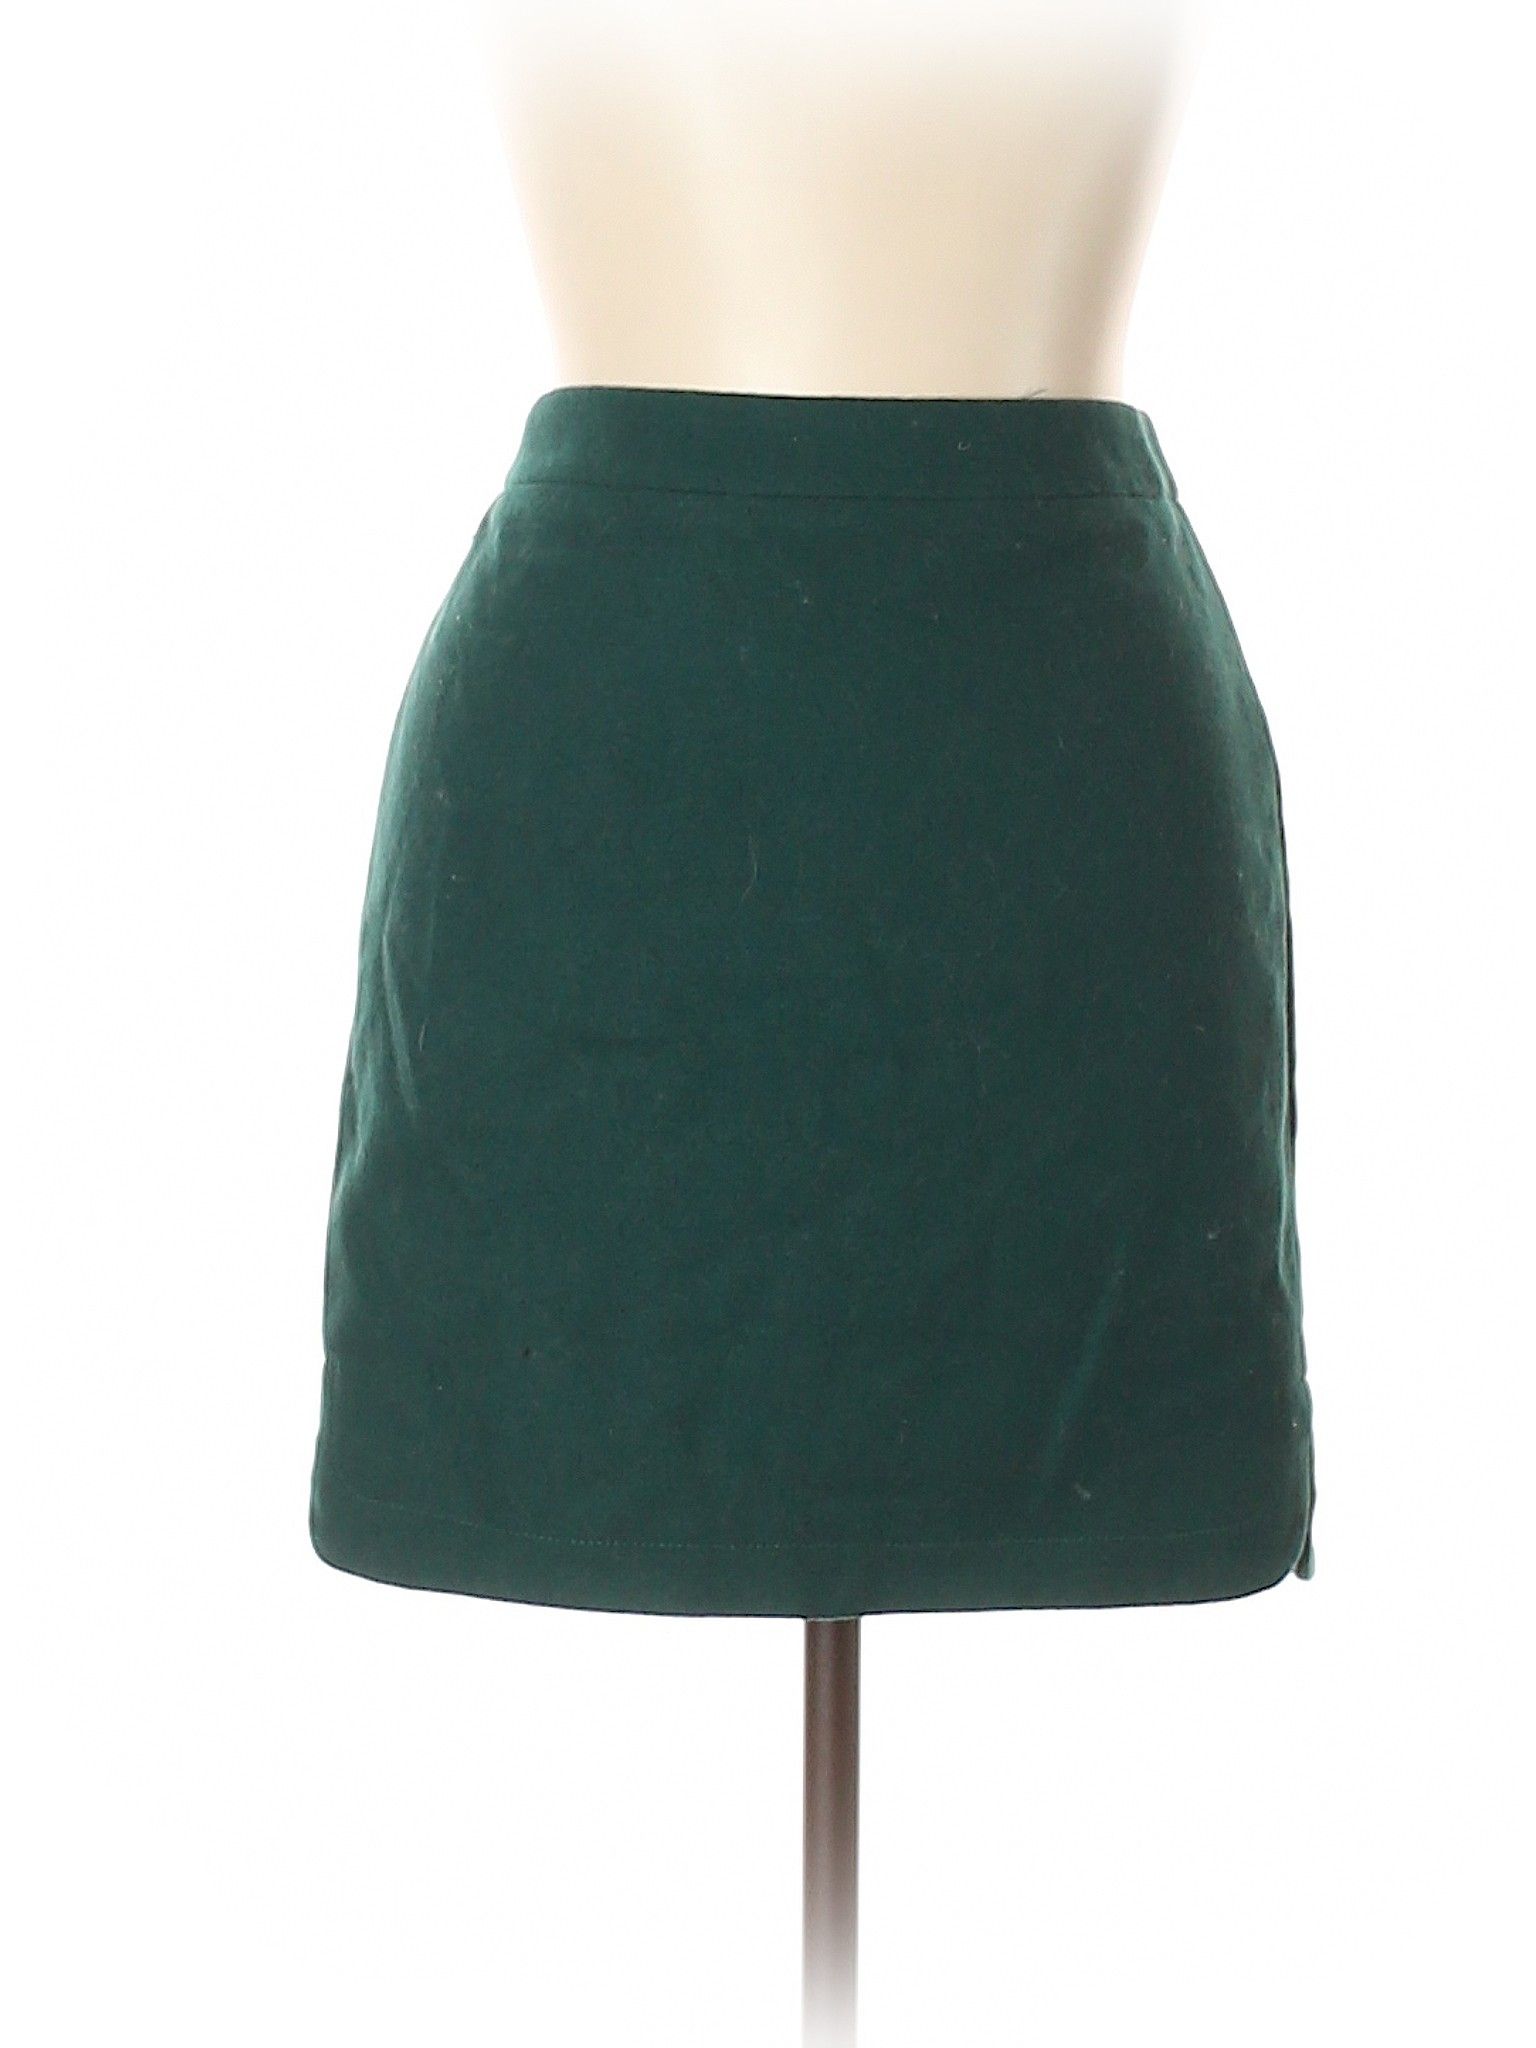 J. Crew Factory Store Wool Skirt Size 12: Dark Green Women's Bottoms - 45717399 | thredUP